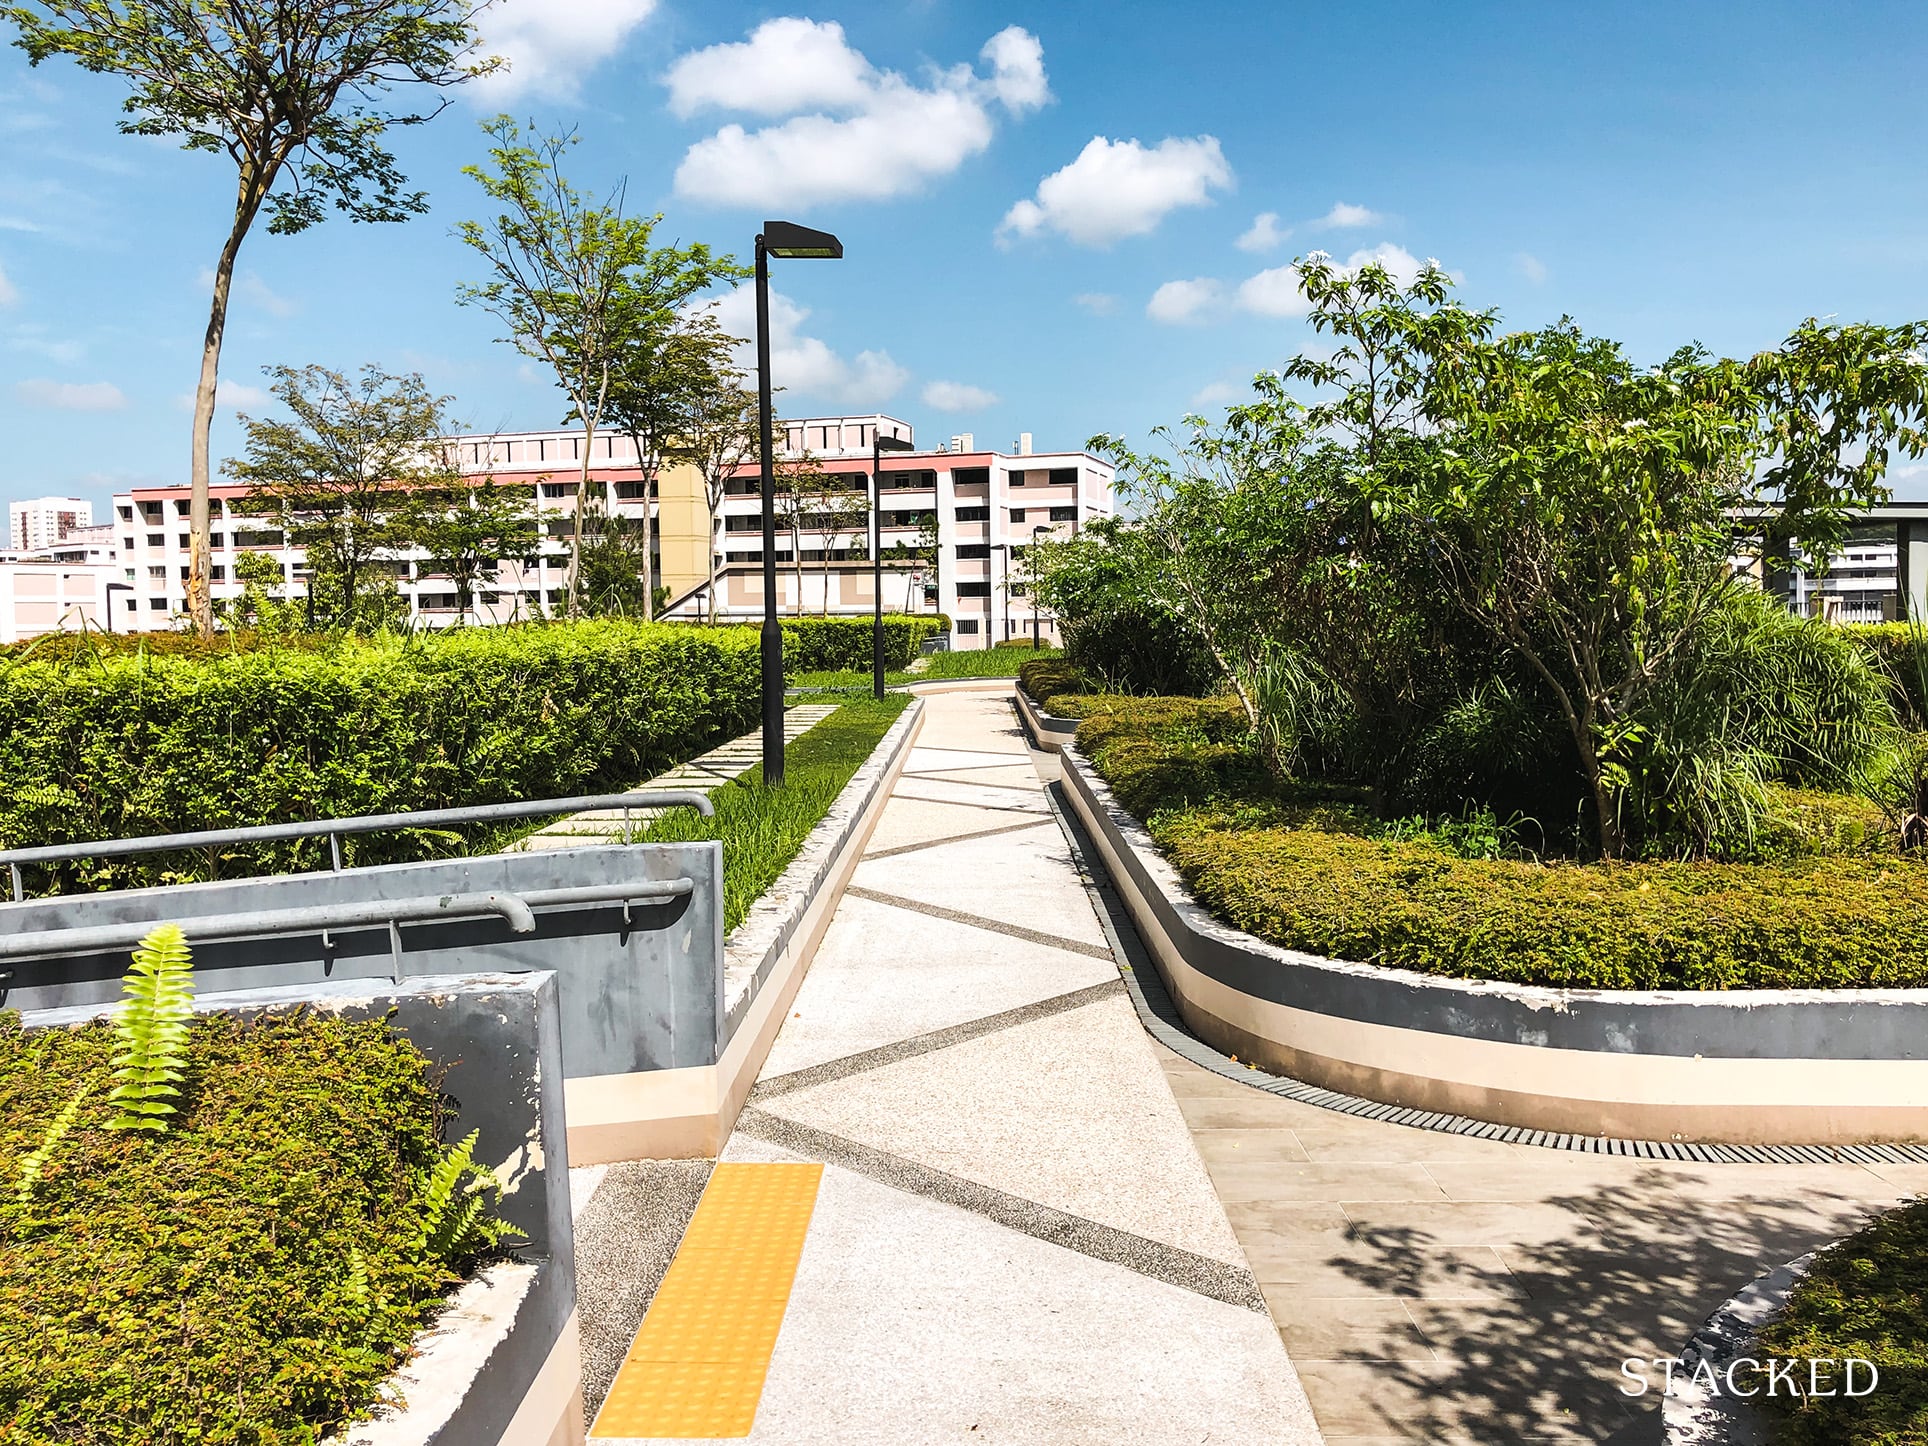 SkyPeak @ Bukit Batok Carpark Rooftop Garden